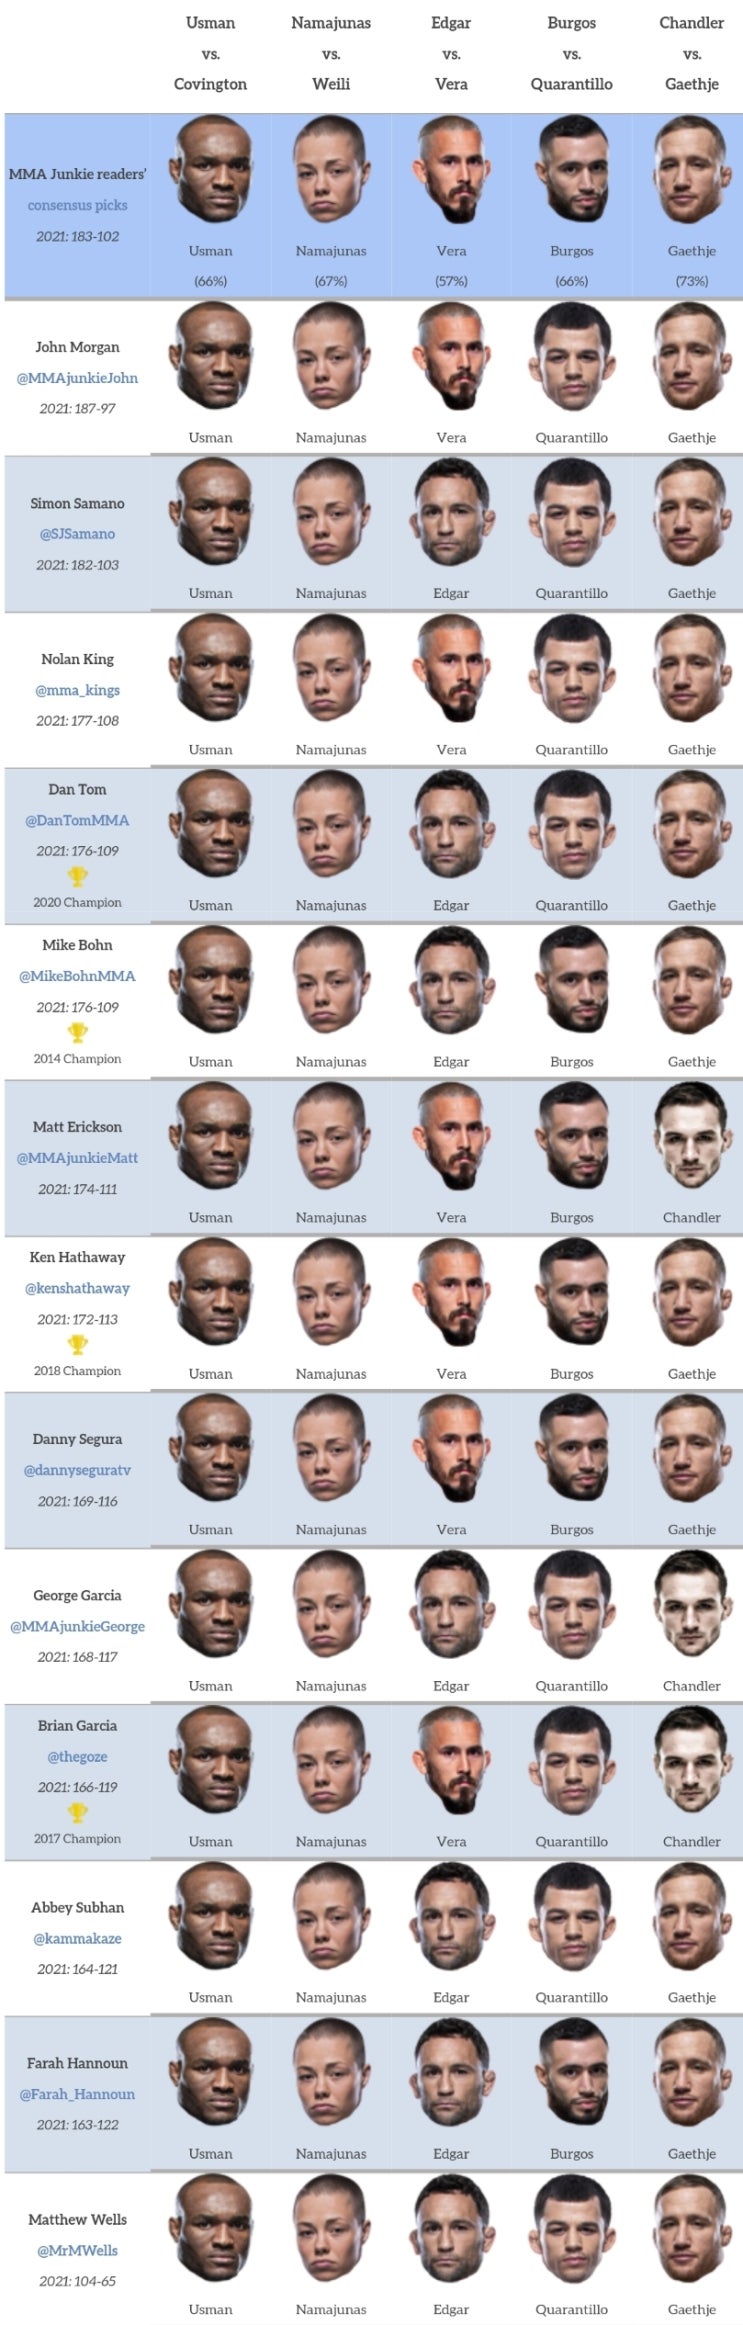 UFC 268: 우스만 vs 코빙턴 미디어 예상과 배당률 - 리벤지는 가능할까?